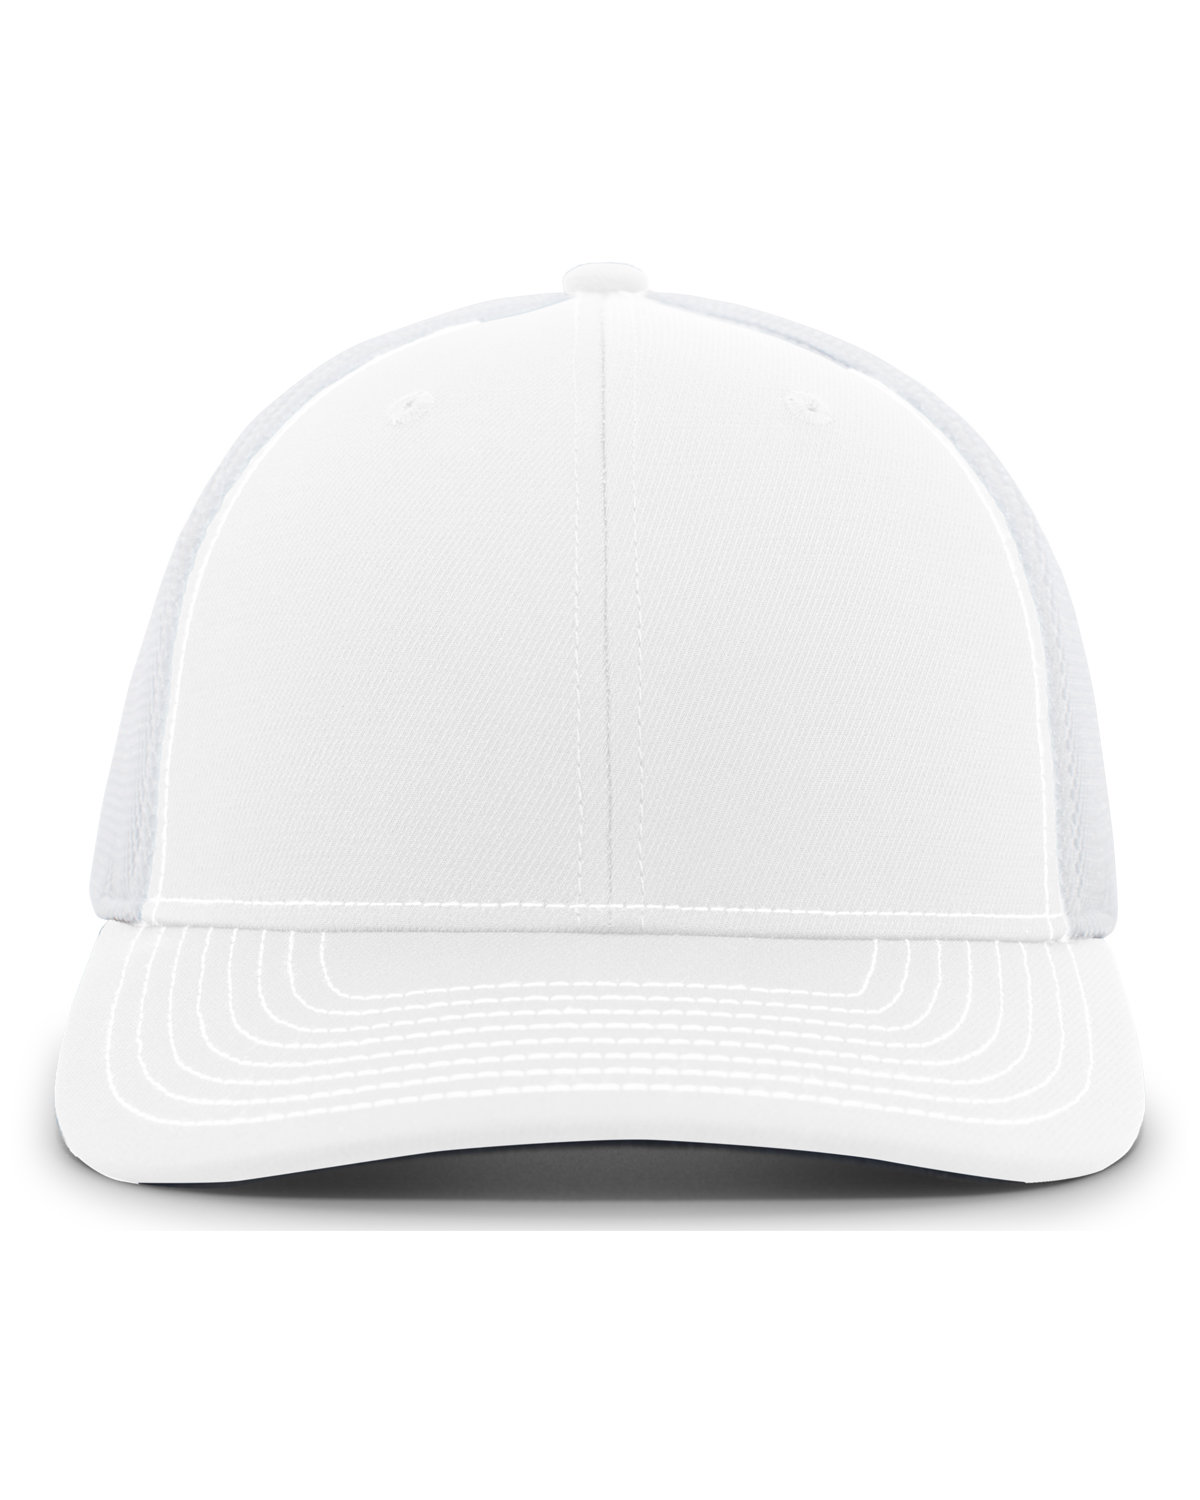 Air Mesh Sideline Cap-Pacific Headwear